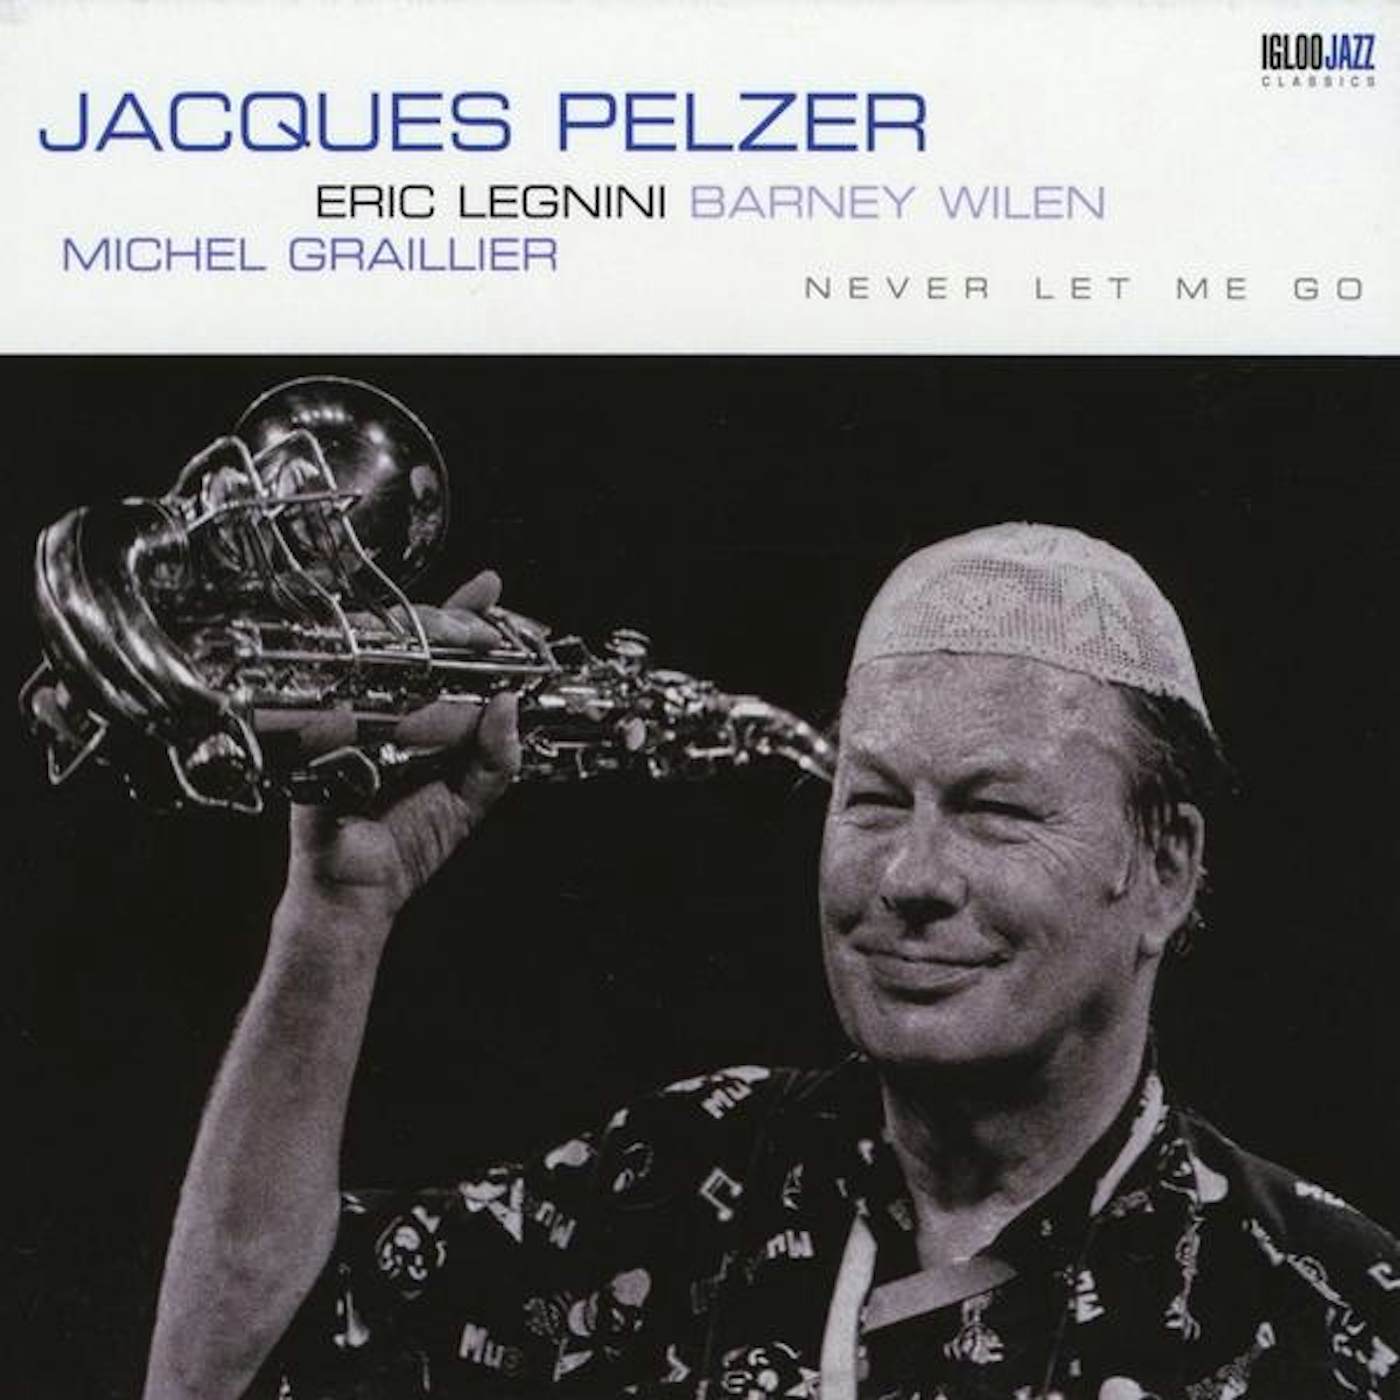 Jacques Pelzer NEVER LET ME GO CD